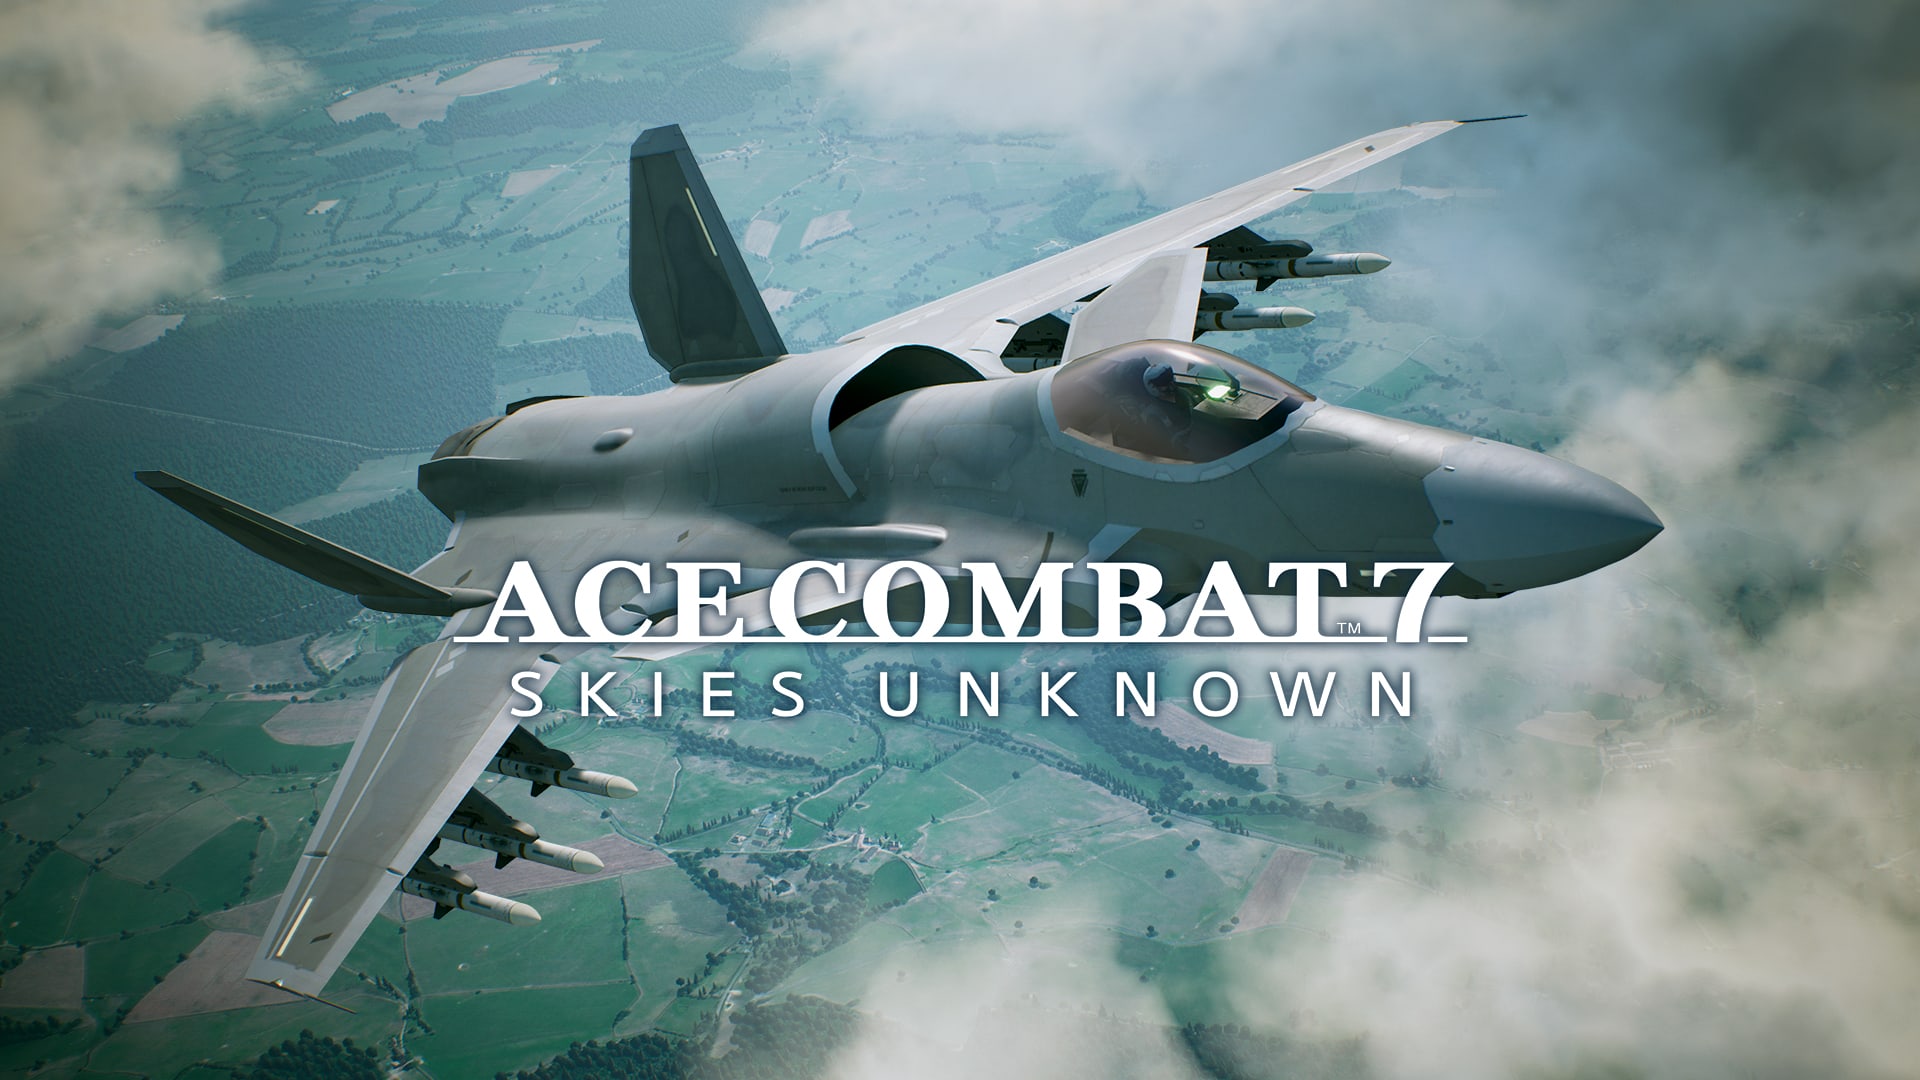 ACE COMBAT™7: SKIES UNKNOWN - Conjunto de ASF-X Shinden II 1